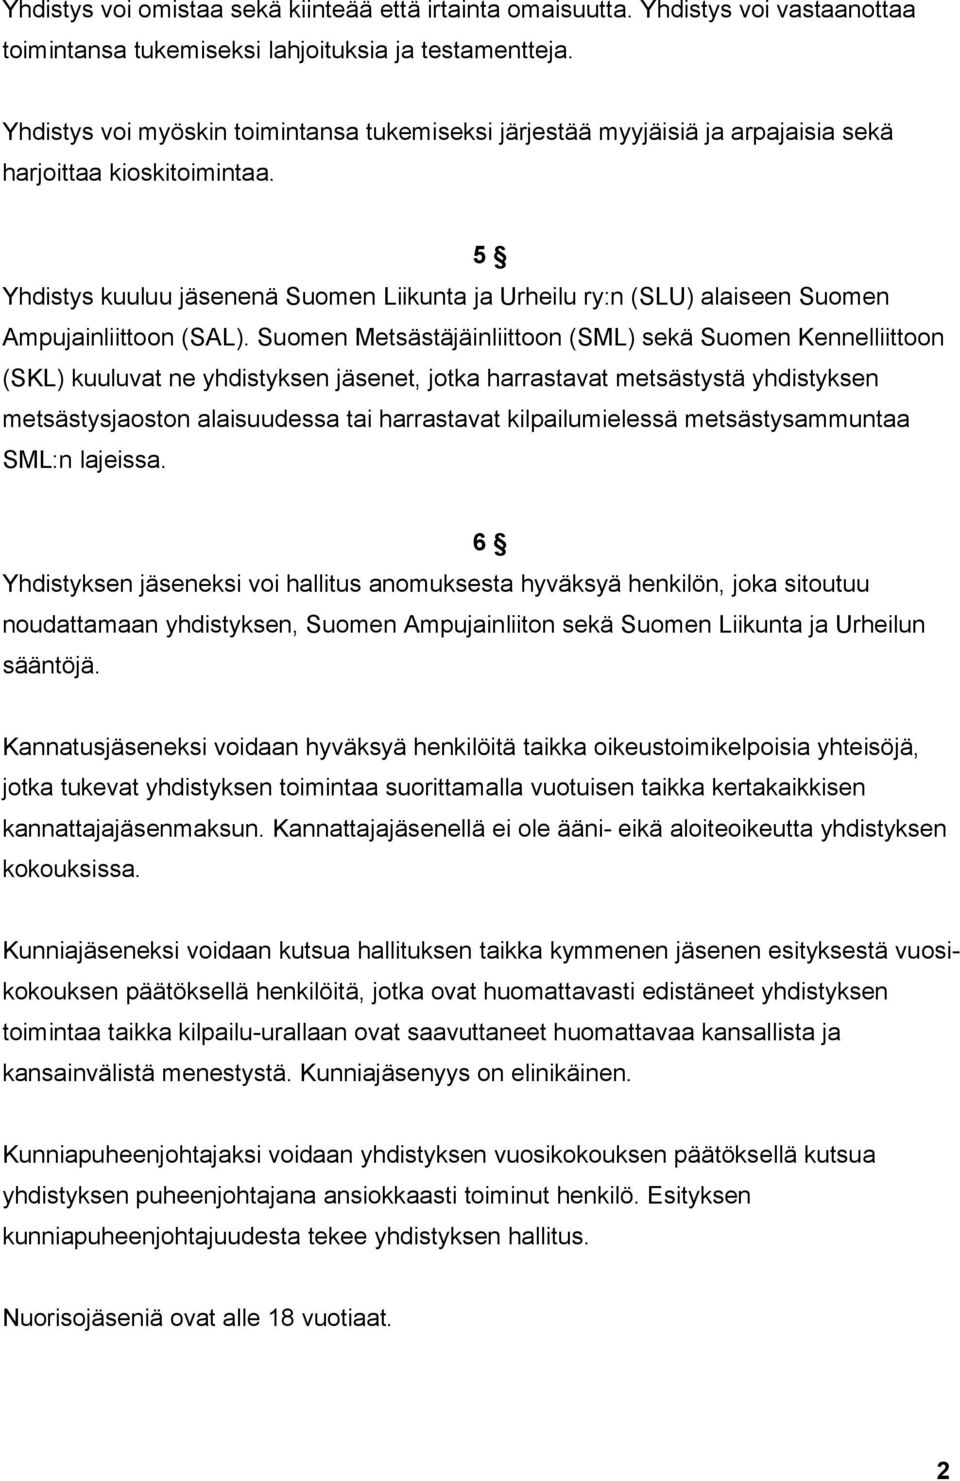 5 Yhdistys kuuluu jäsenenä Suomen Liikunta ja Urheilu ry:n (SLU) alaiseen Suomen Ampujainliittoon (SAL).